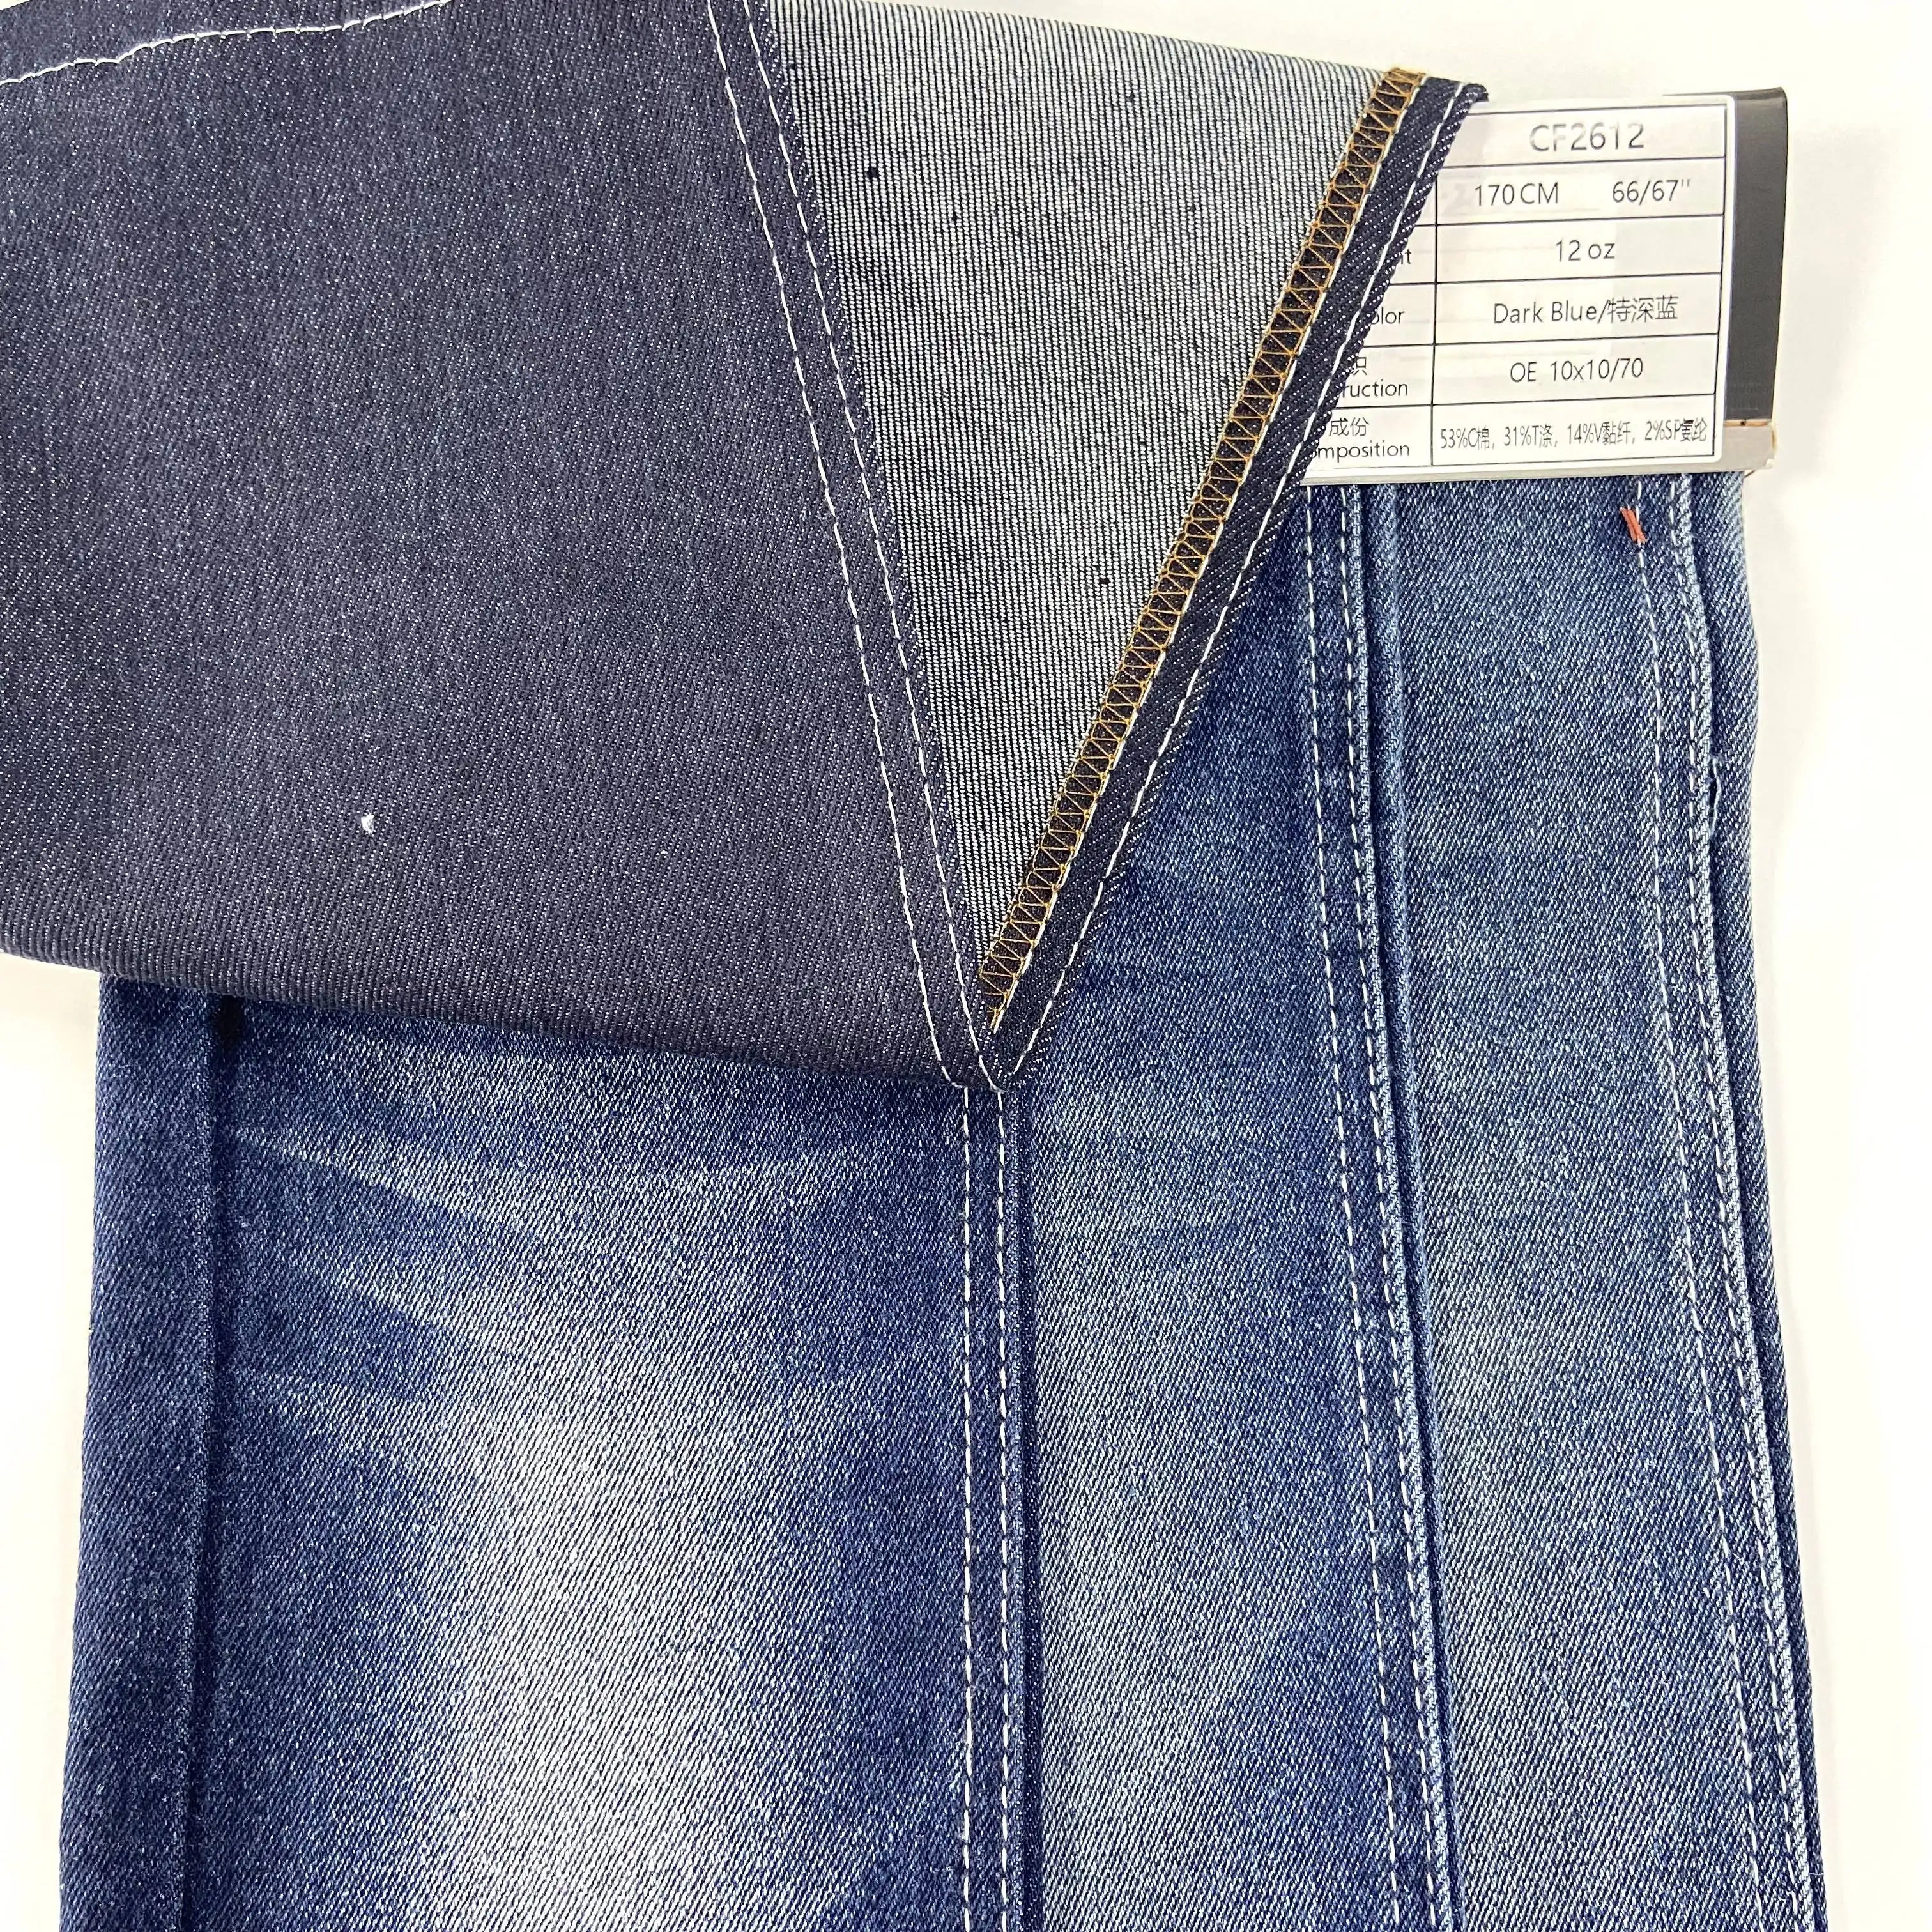 Migliore vendita stile OE qualità a basso prezzo 12oz B/w buon elasticizzato indaco blu scuro senza Slub tessuto in Denim per Jeans